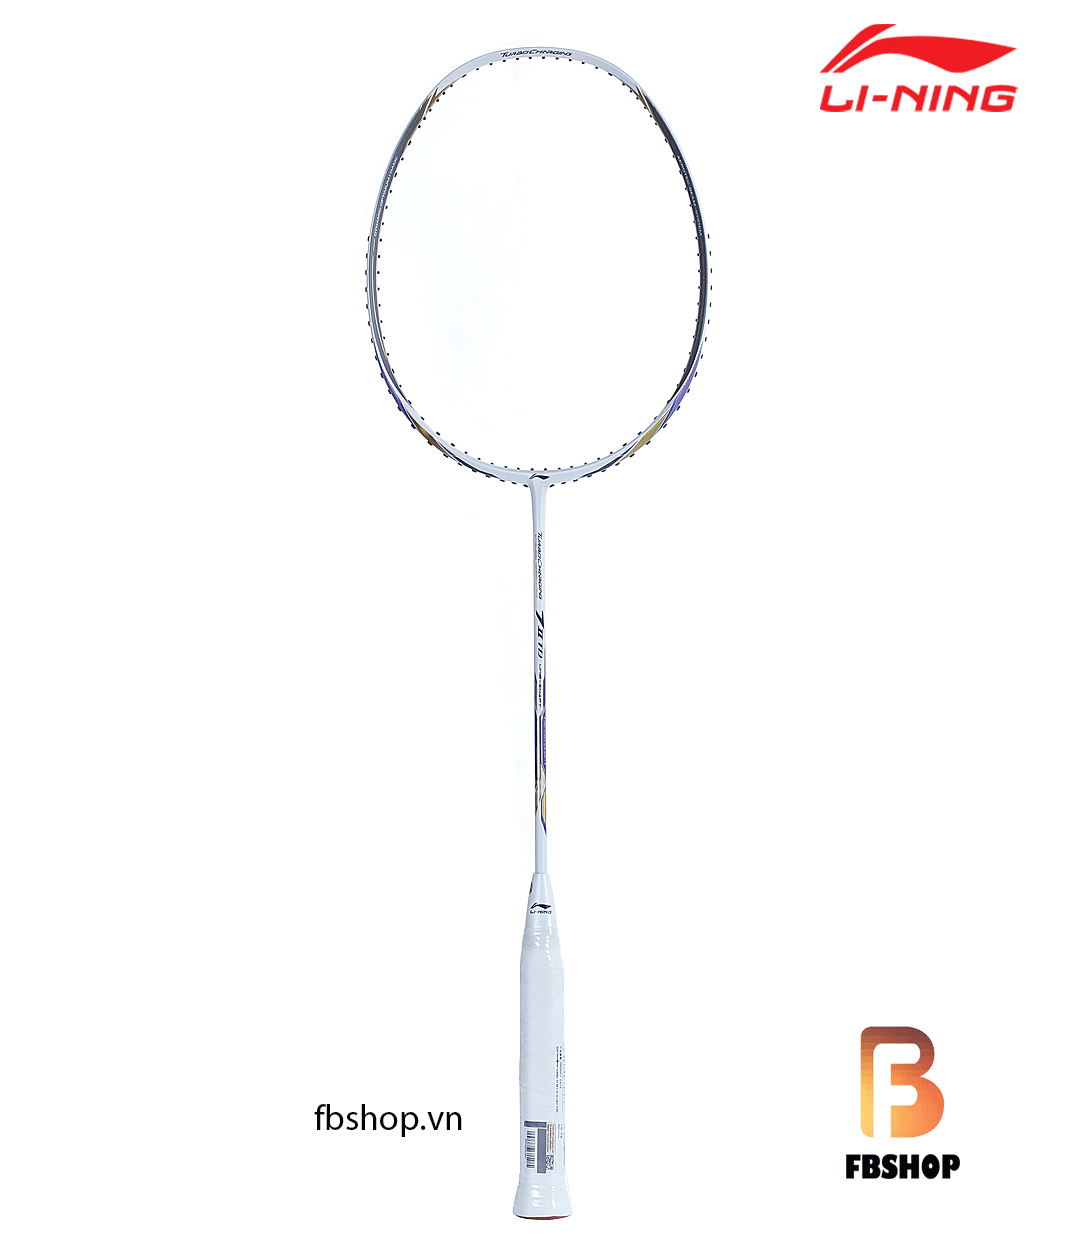 vợt cầu lông lining 7IITD - tổng thể 